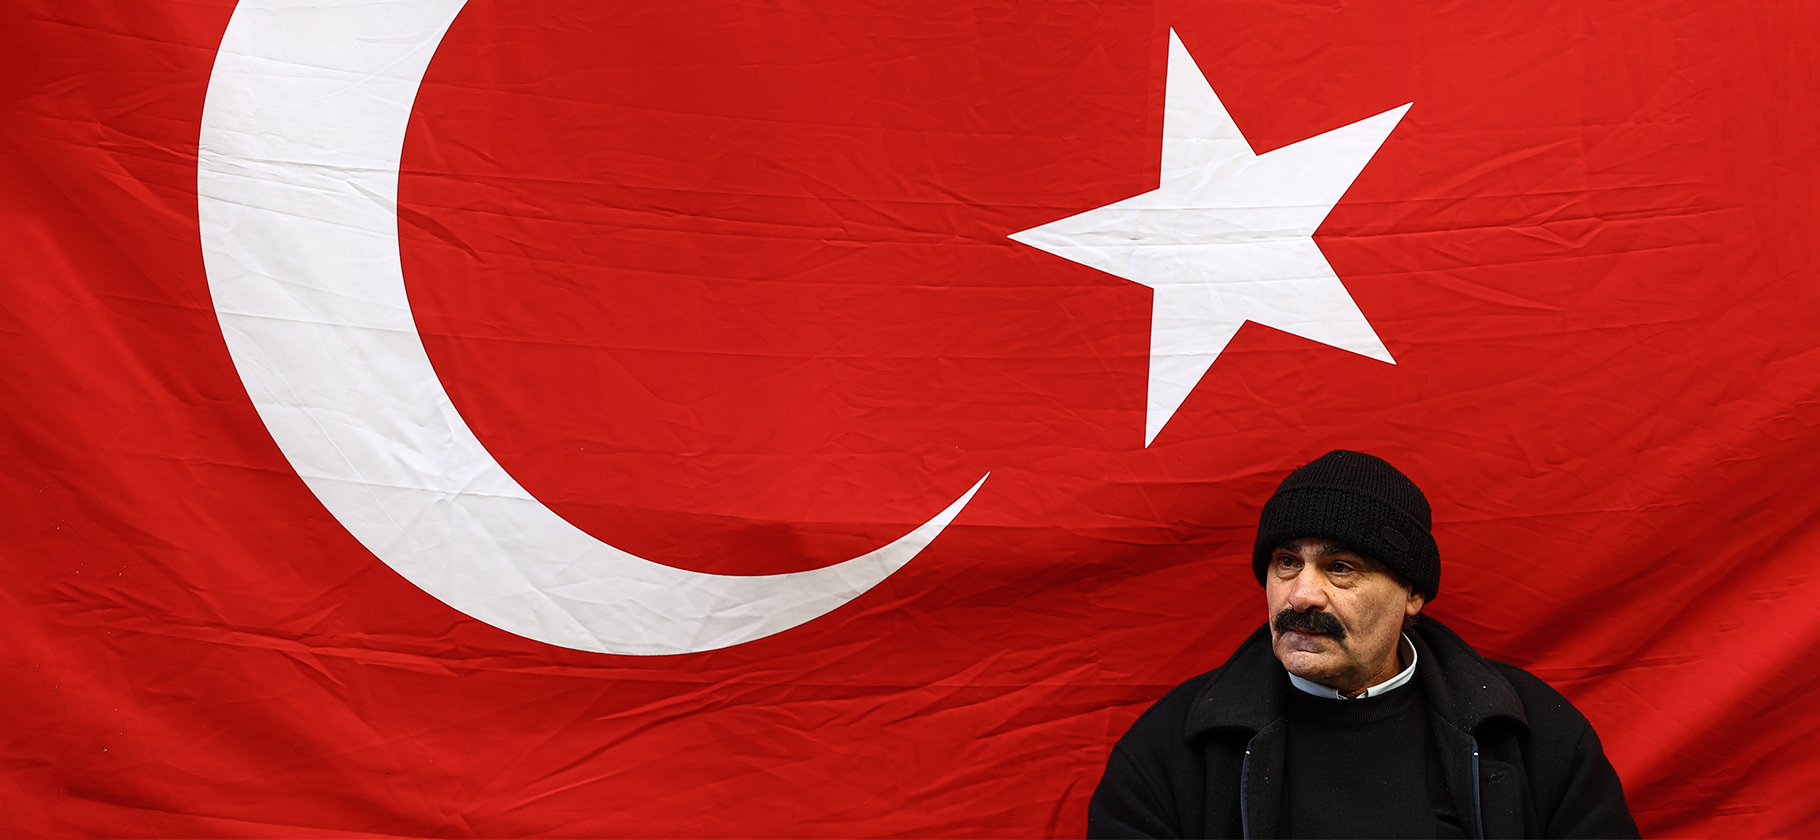 Как турецкую экономику разогнали перед выборами президента низкими ставками